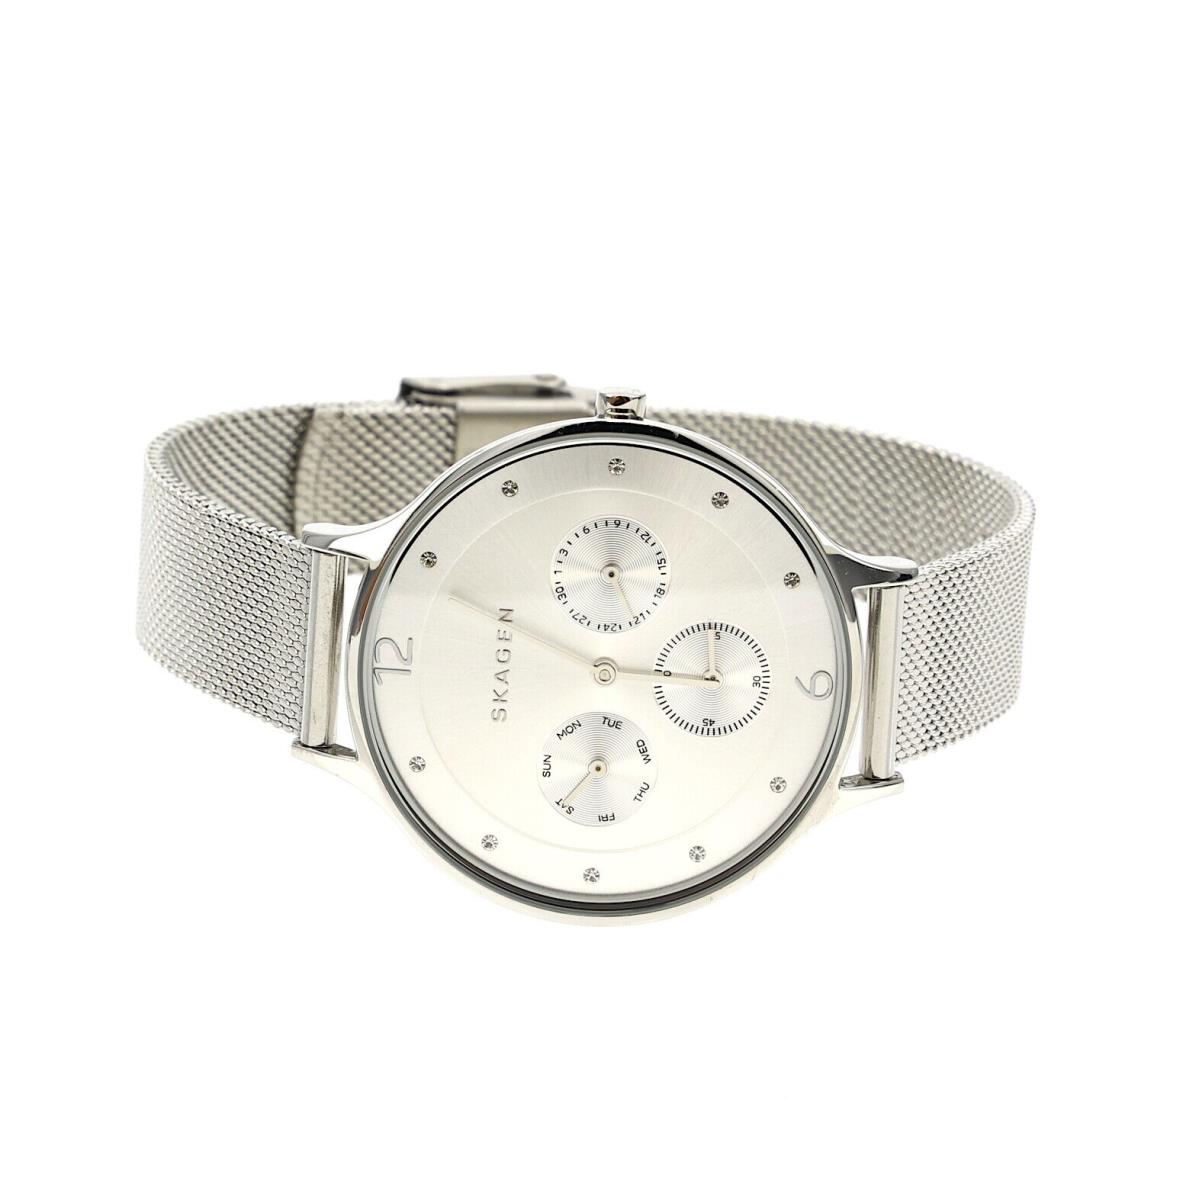 Skagen Women`s Anita Stainless Steel Mesh Bracelet Watch 36mm 1513 - Silver Dial, Silver Band